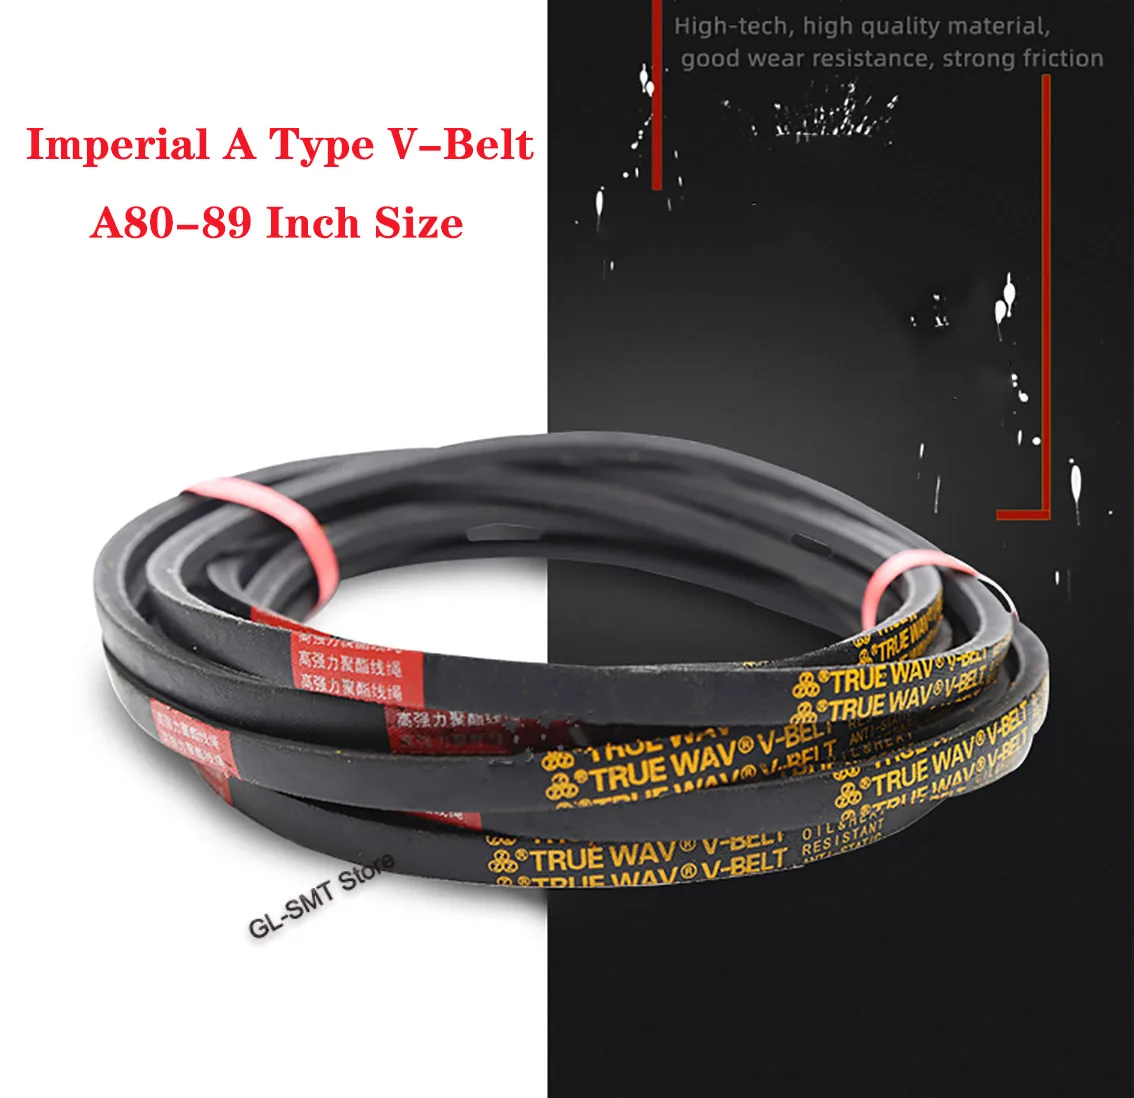 

1Pcs Imperial A Type Triangle Belt A80-89 Inch Size Black Rubber V-Belt Industrial Agricultural Mechanical Transmission Belt